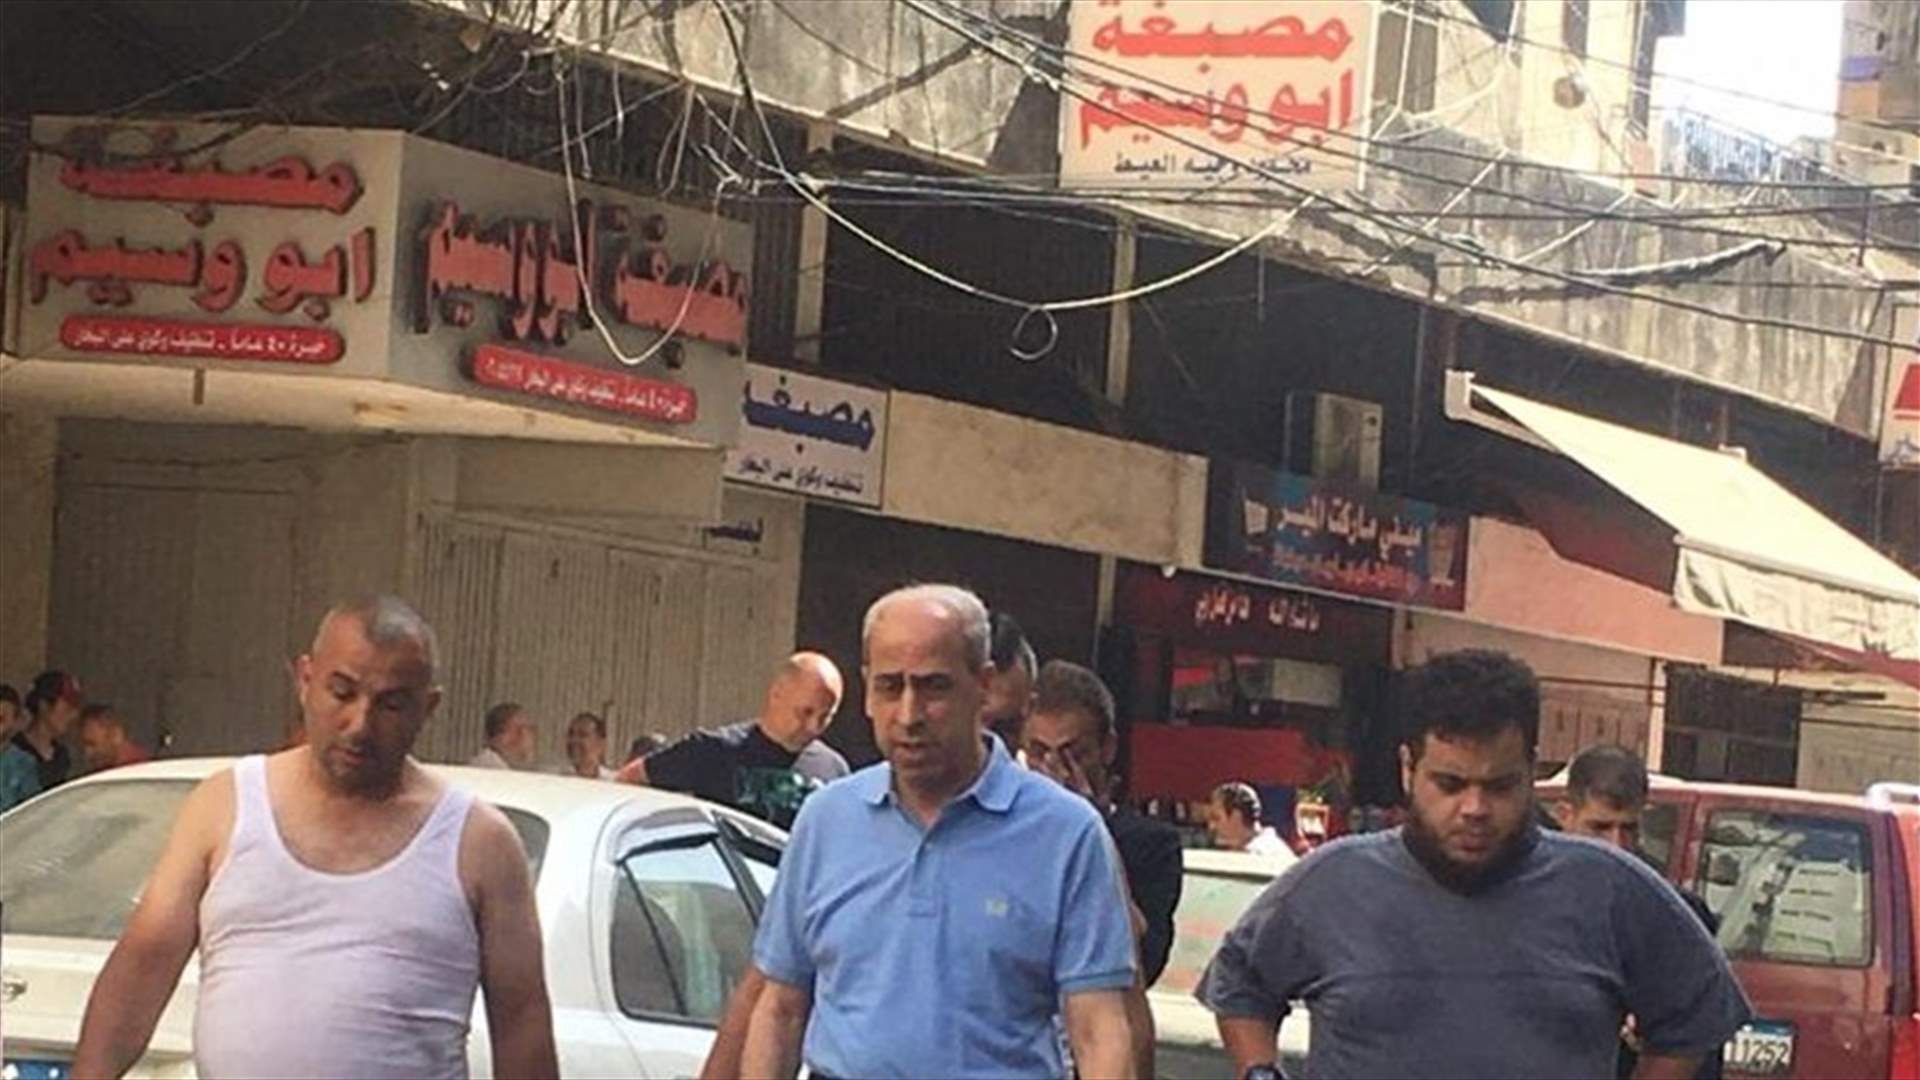 دياب أوعز لخير بدفع بدلات إيواء للمتضررين من حريق في طرابلس